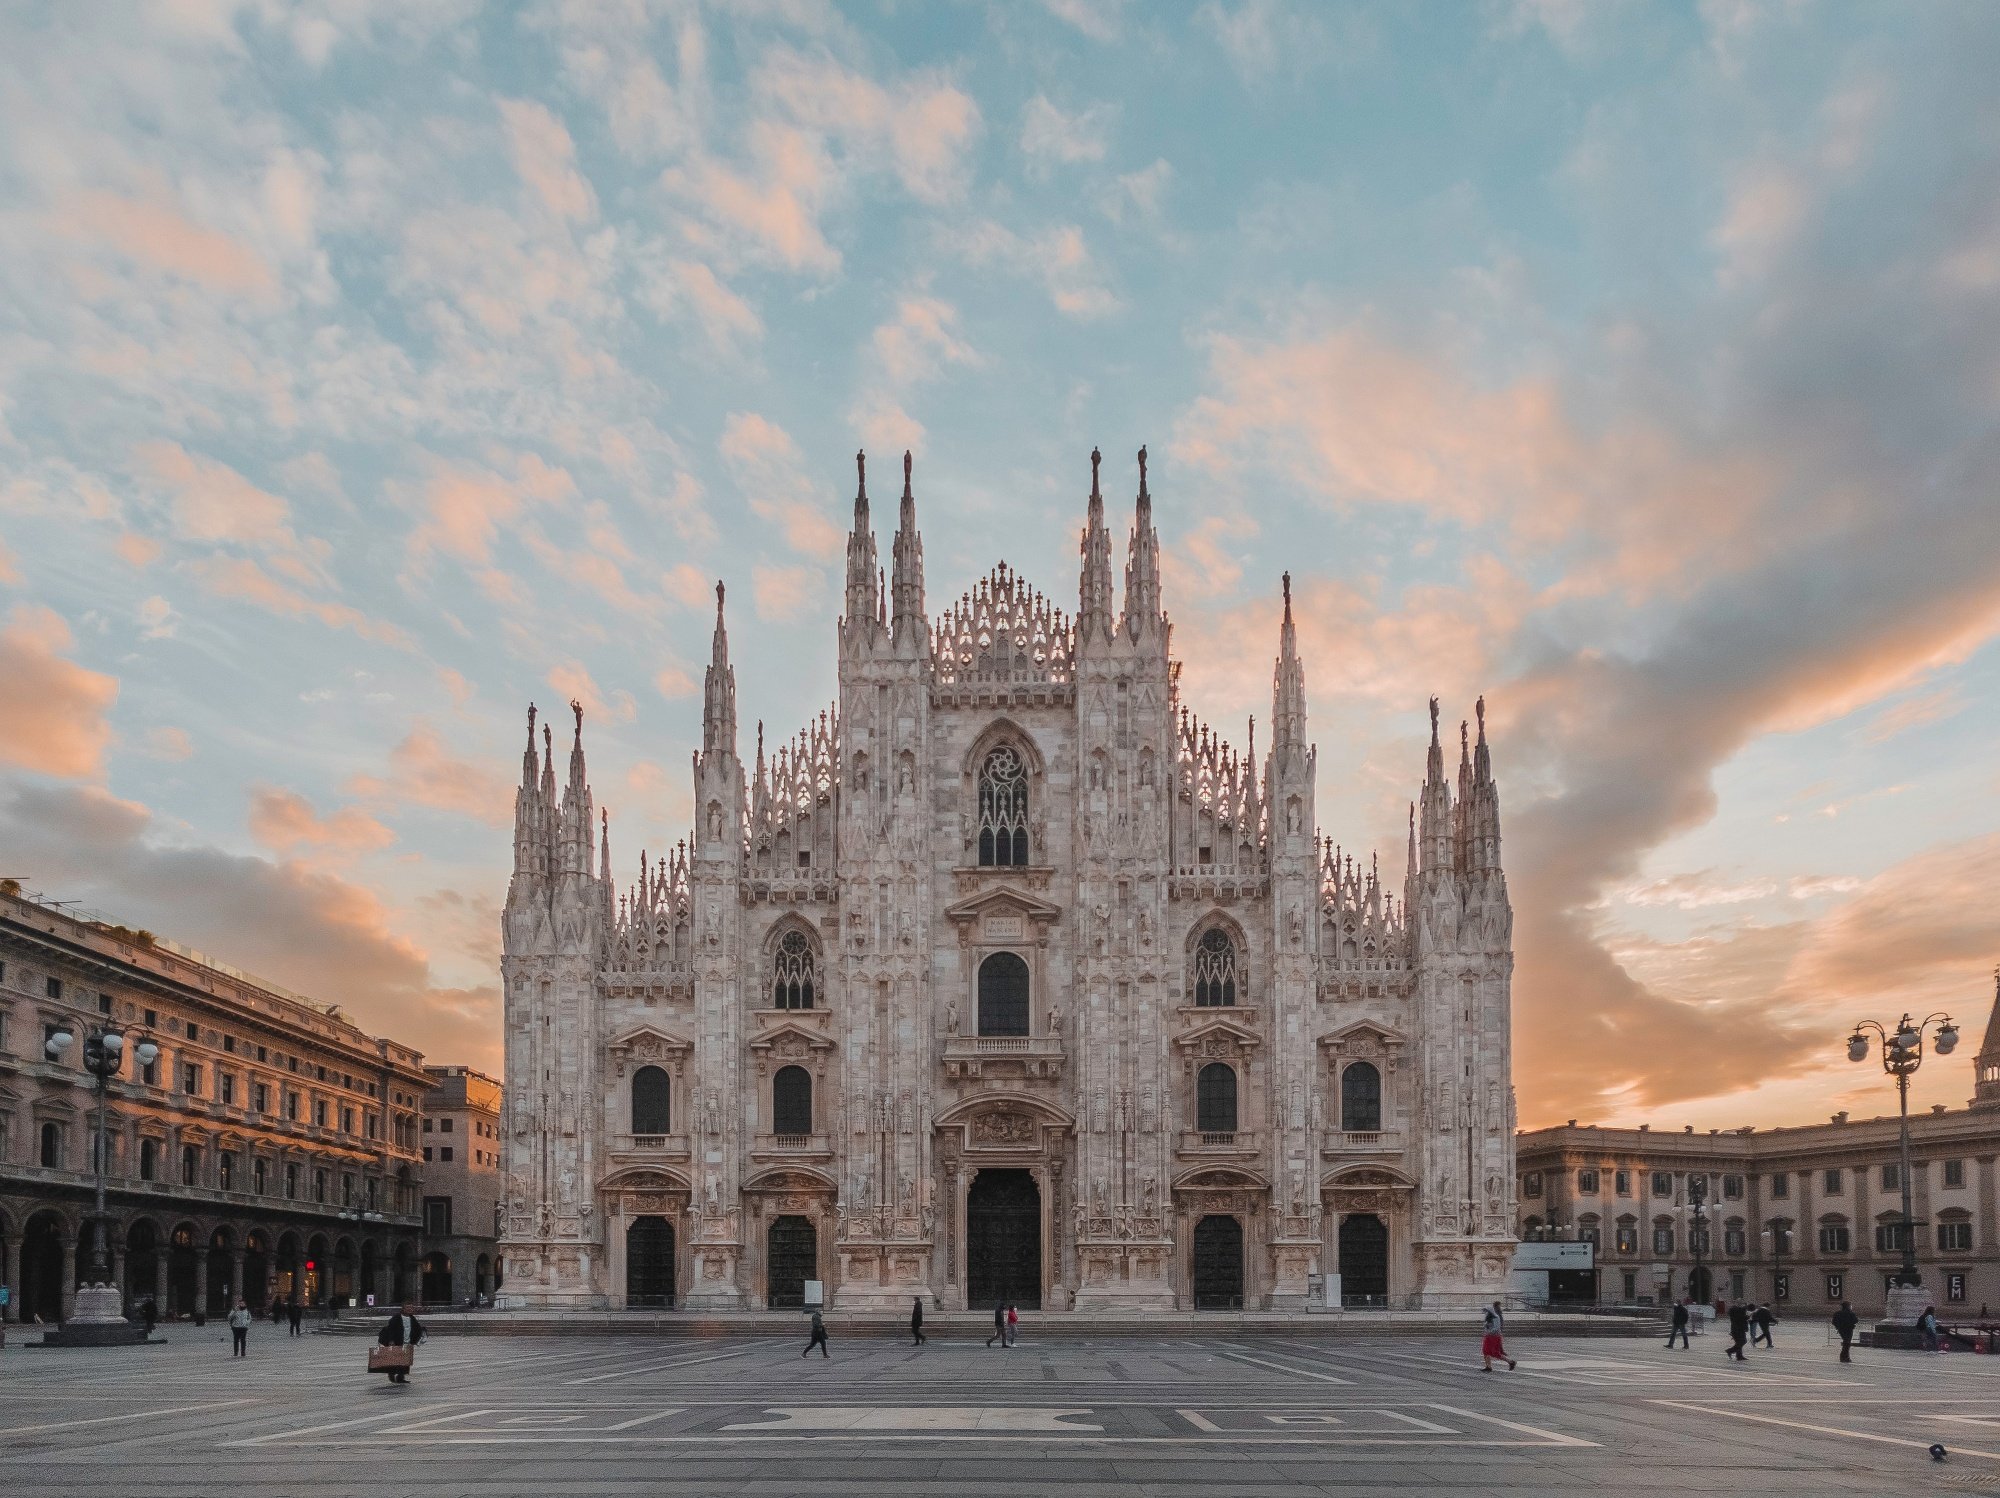 Duomo at sunset in Milan, Italy